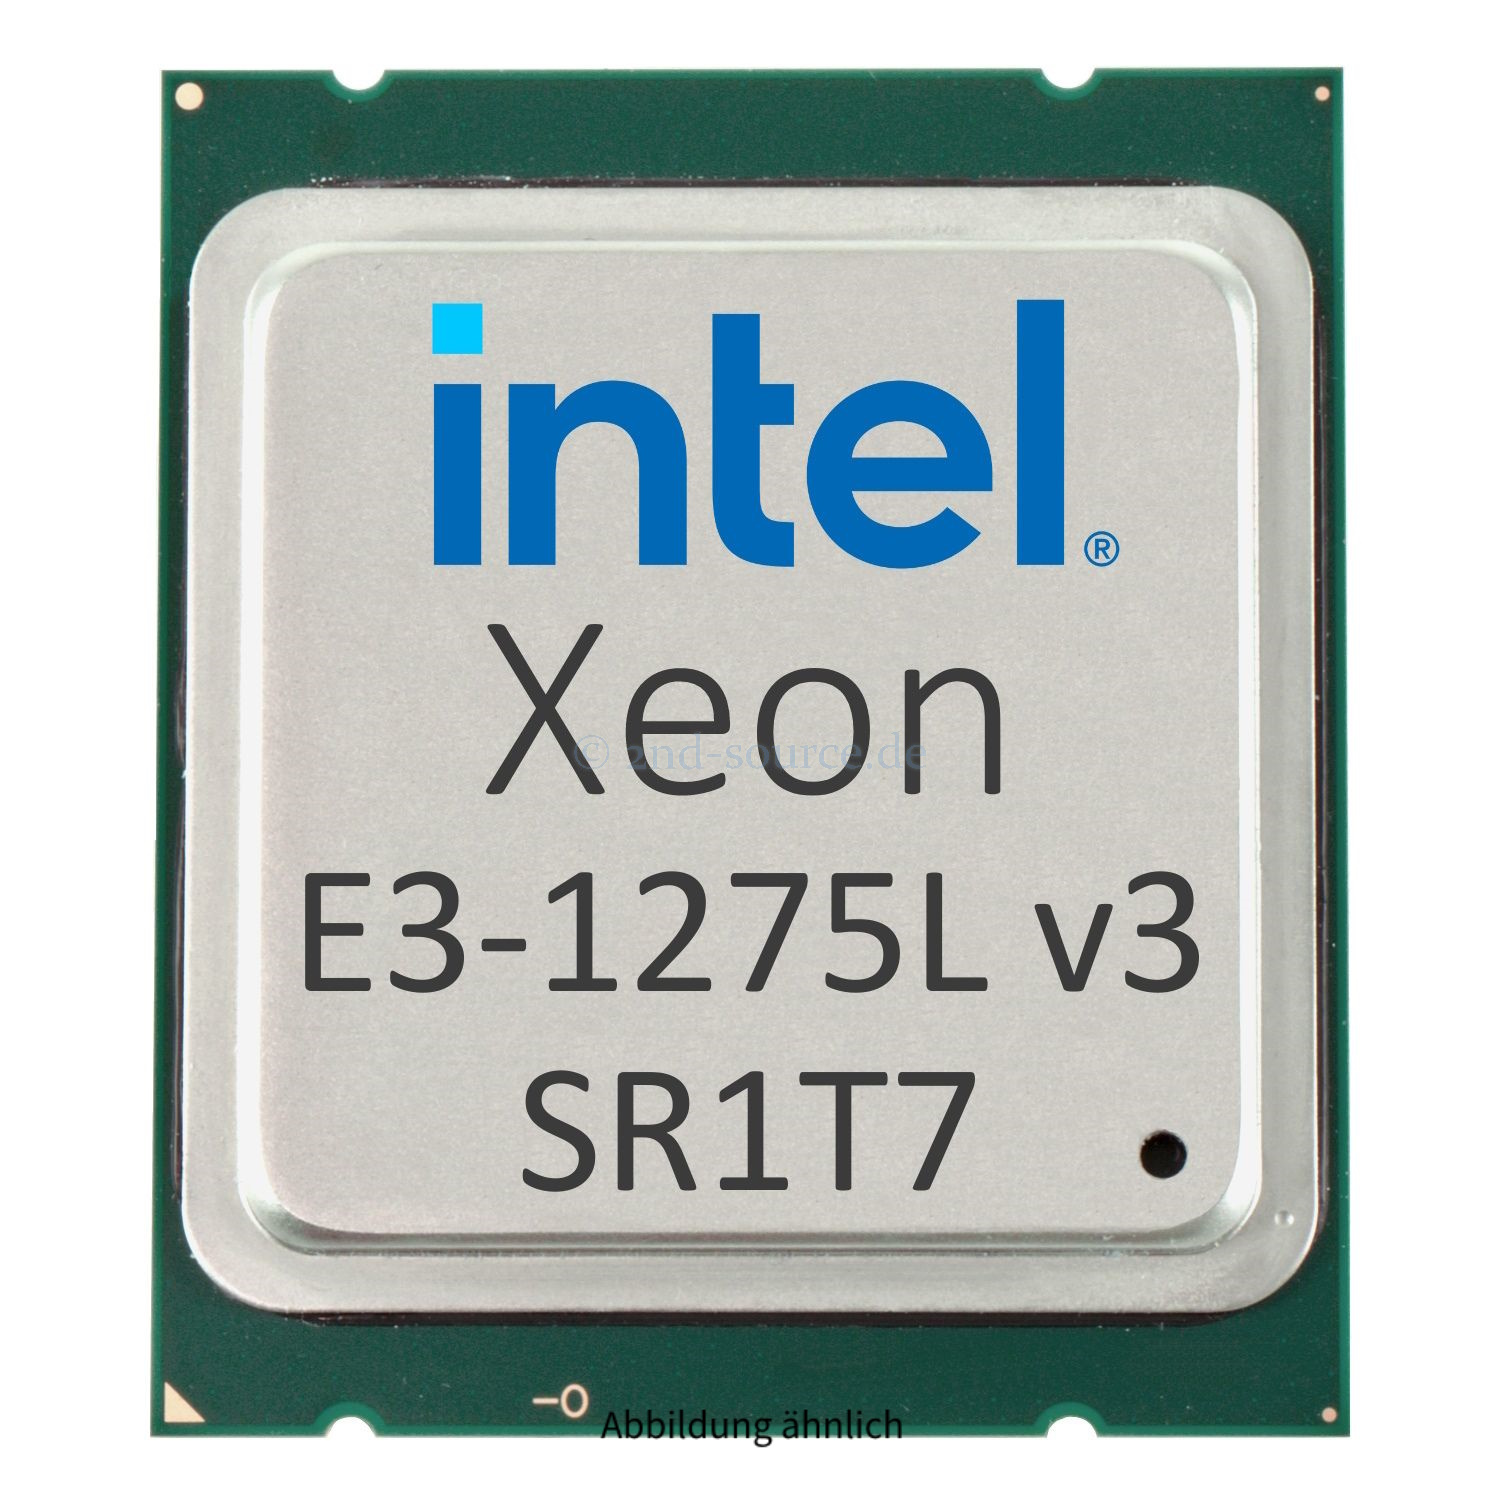 Intel Xeon E3-1275L v3 2.70GHz 8MB 4-Core CPU 45W SR1T7 CM8064601575224